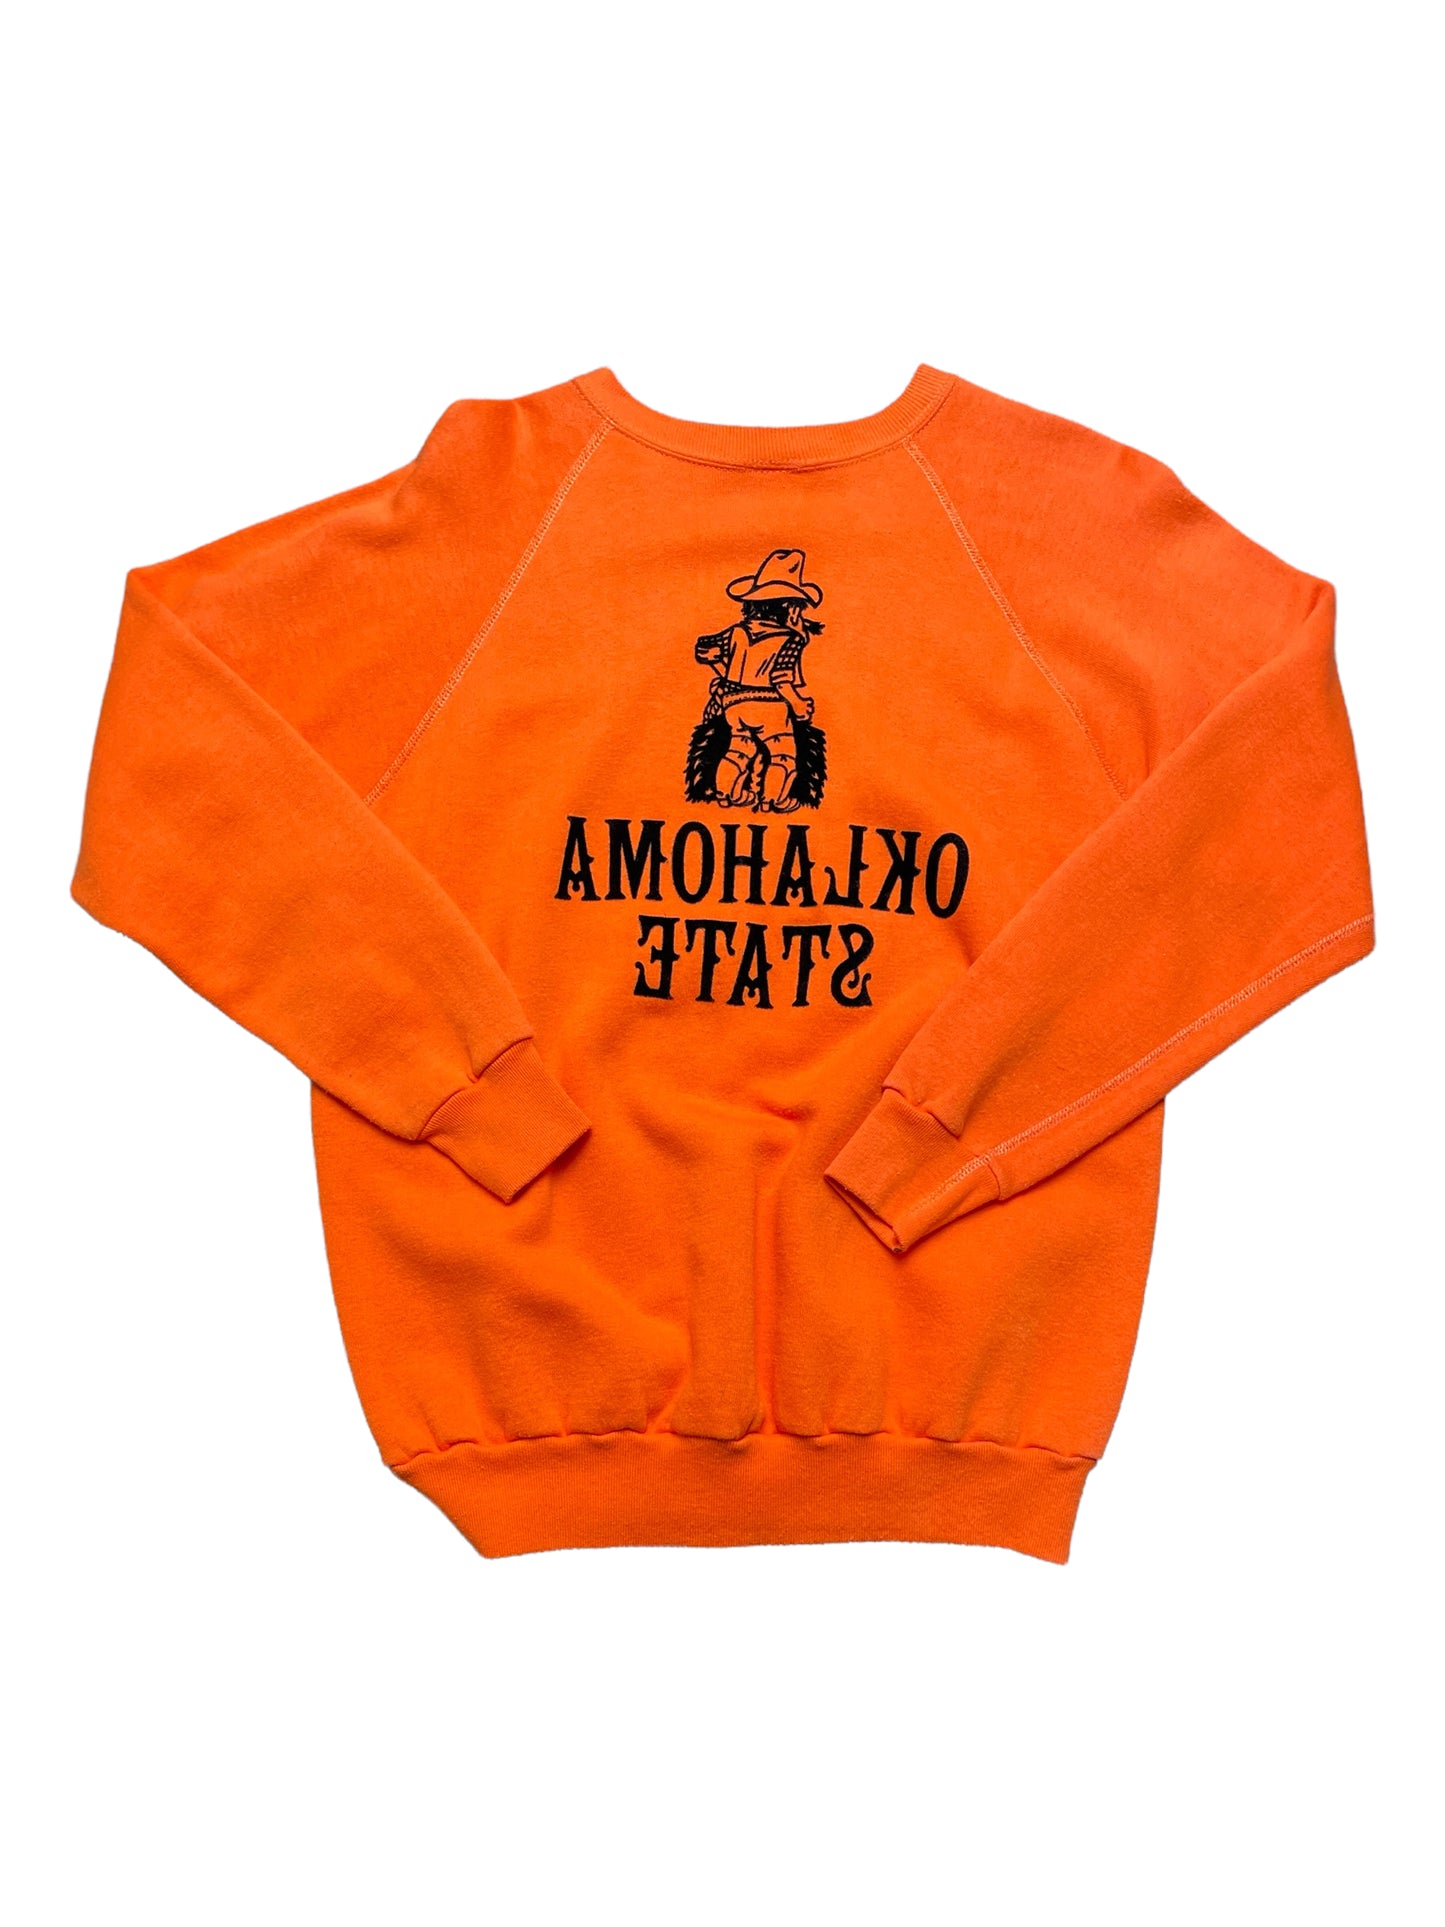 Vintage 70s Orange Oklahoma State Sweatshirt XLarge